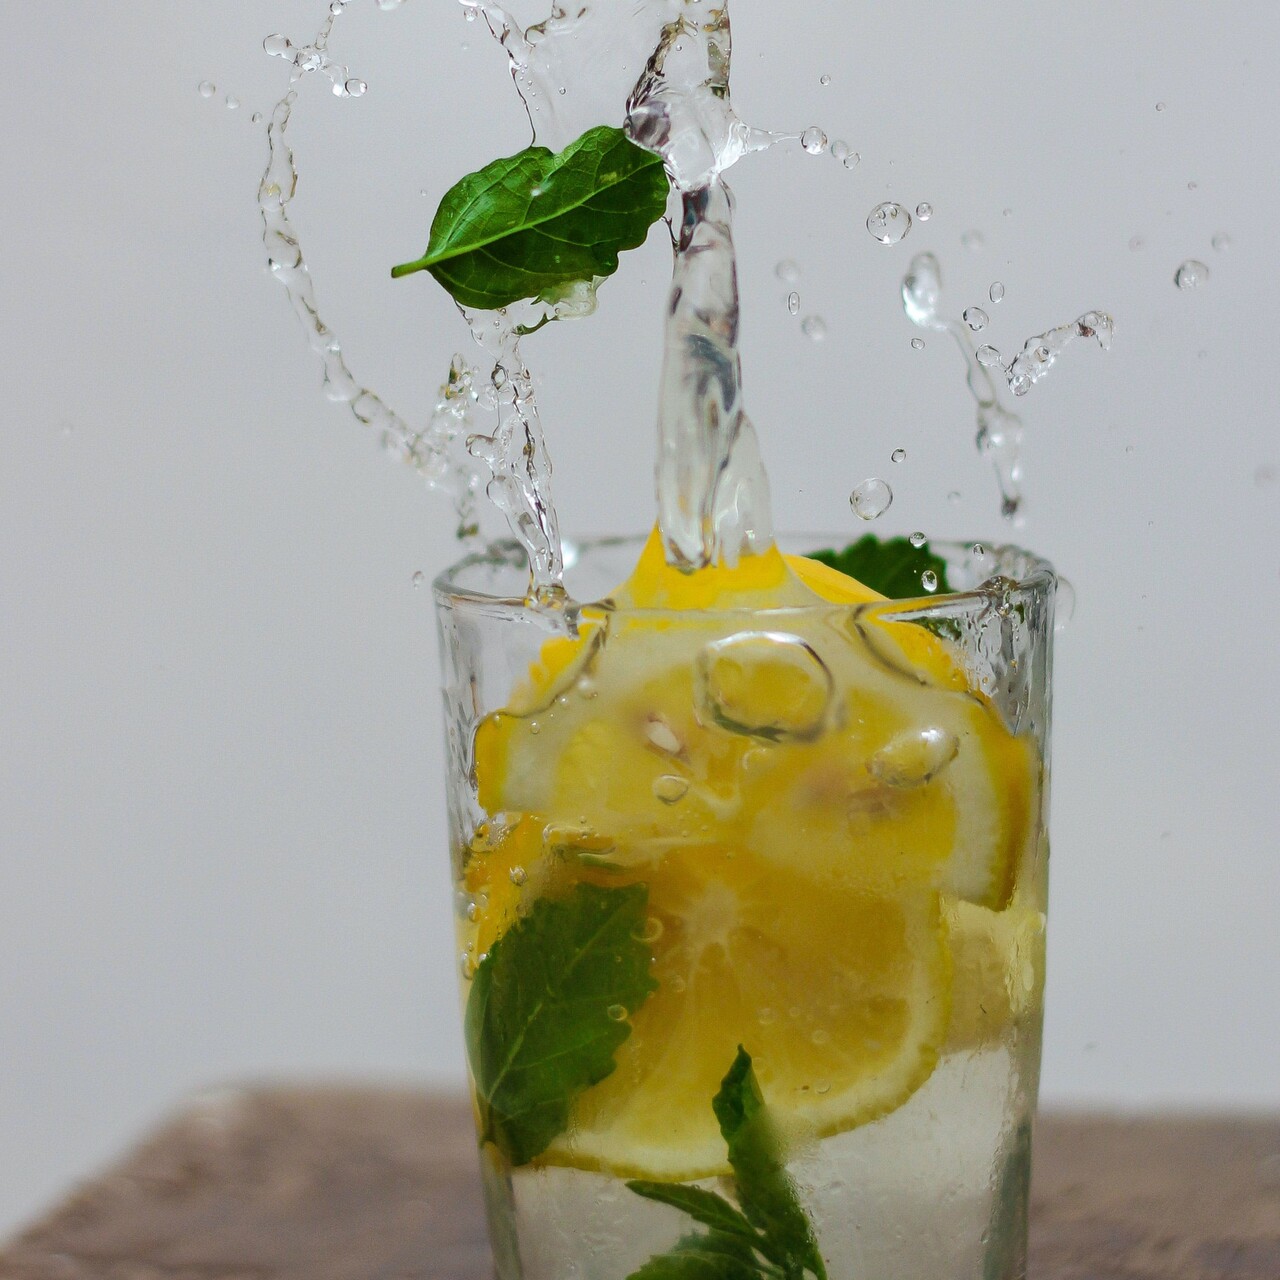 Limonlu su içmenin faydaları